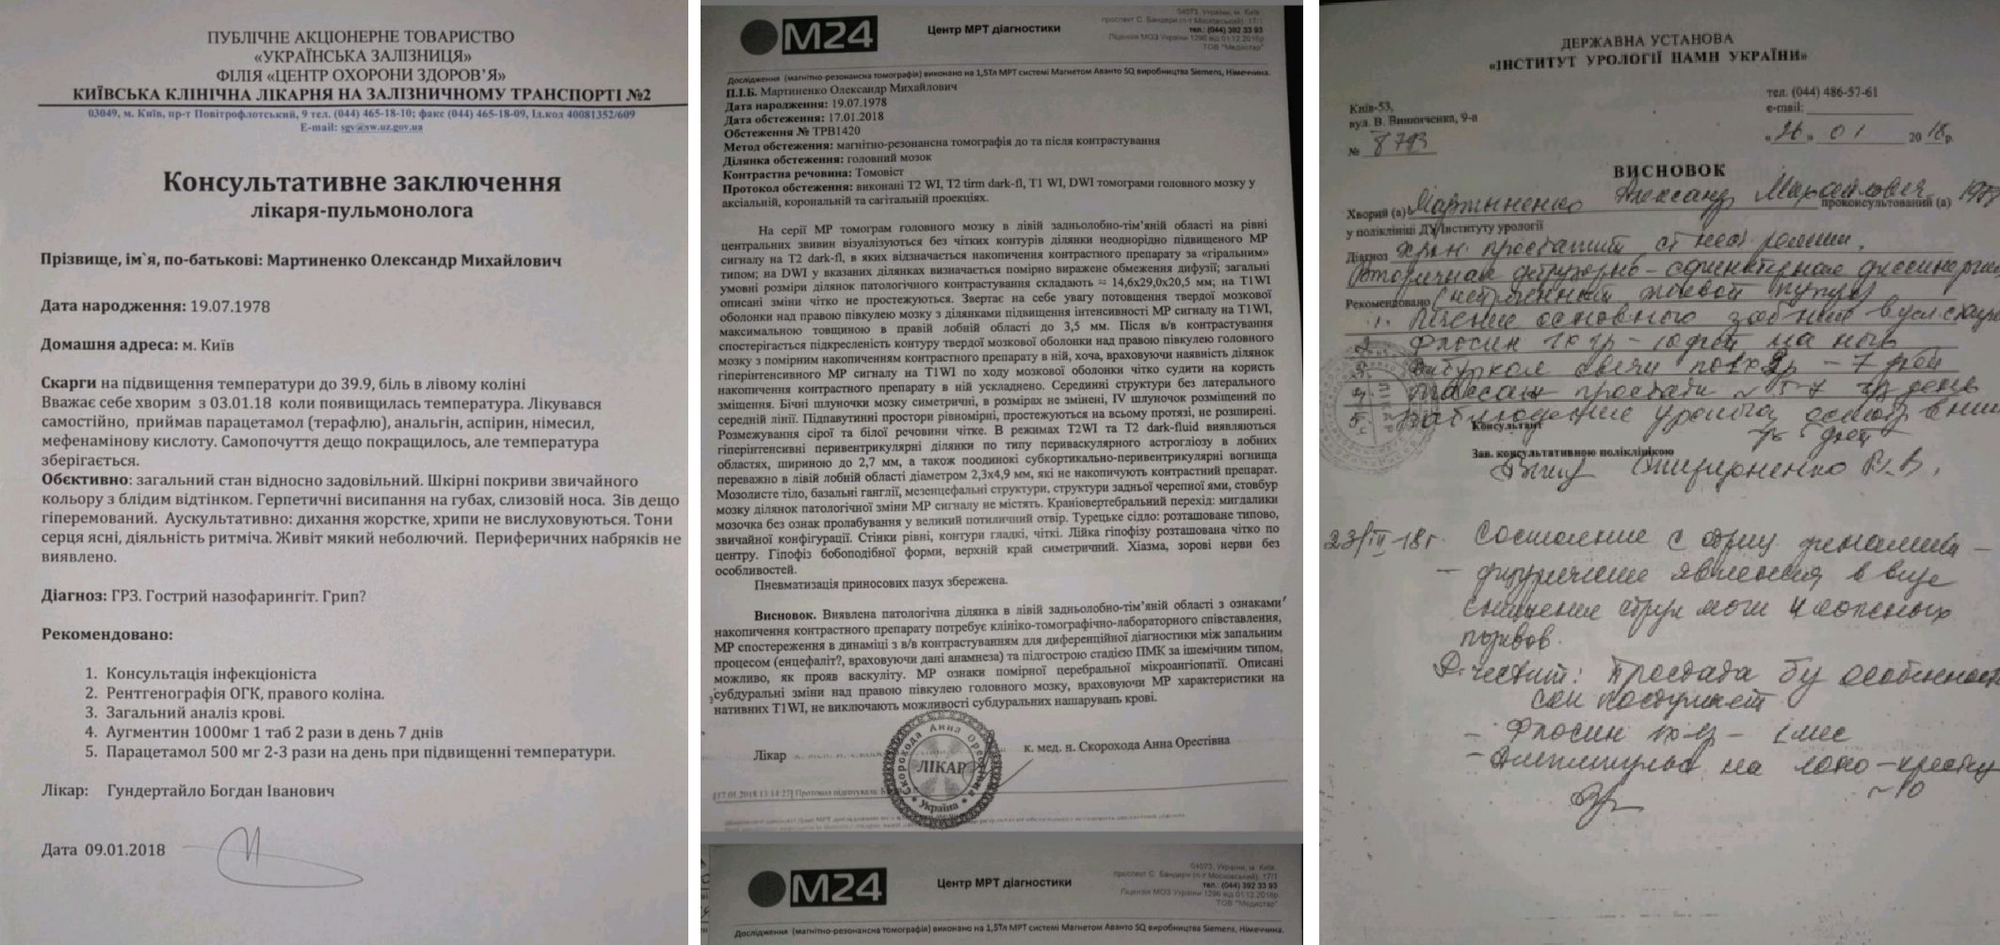 В Закарпатье представители местного ТЦК и СП похитили мужчину и пытали его в подвале, - СМИ